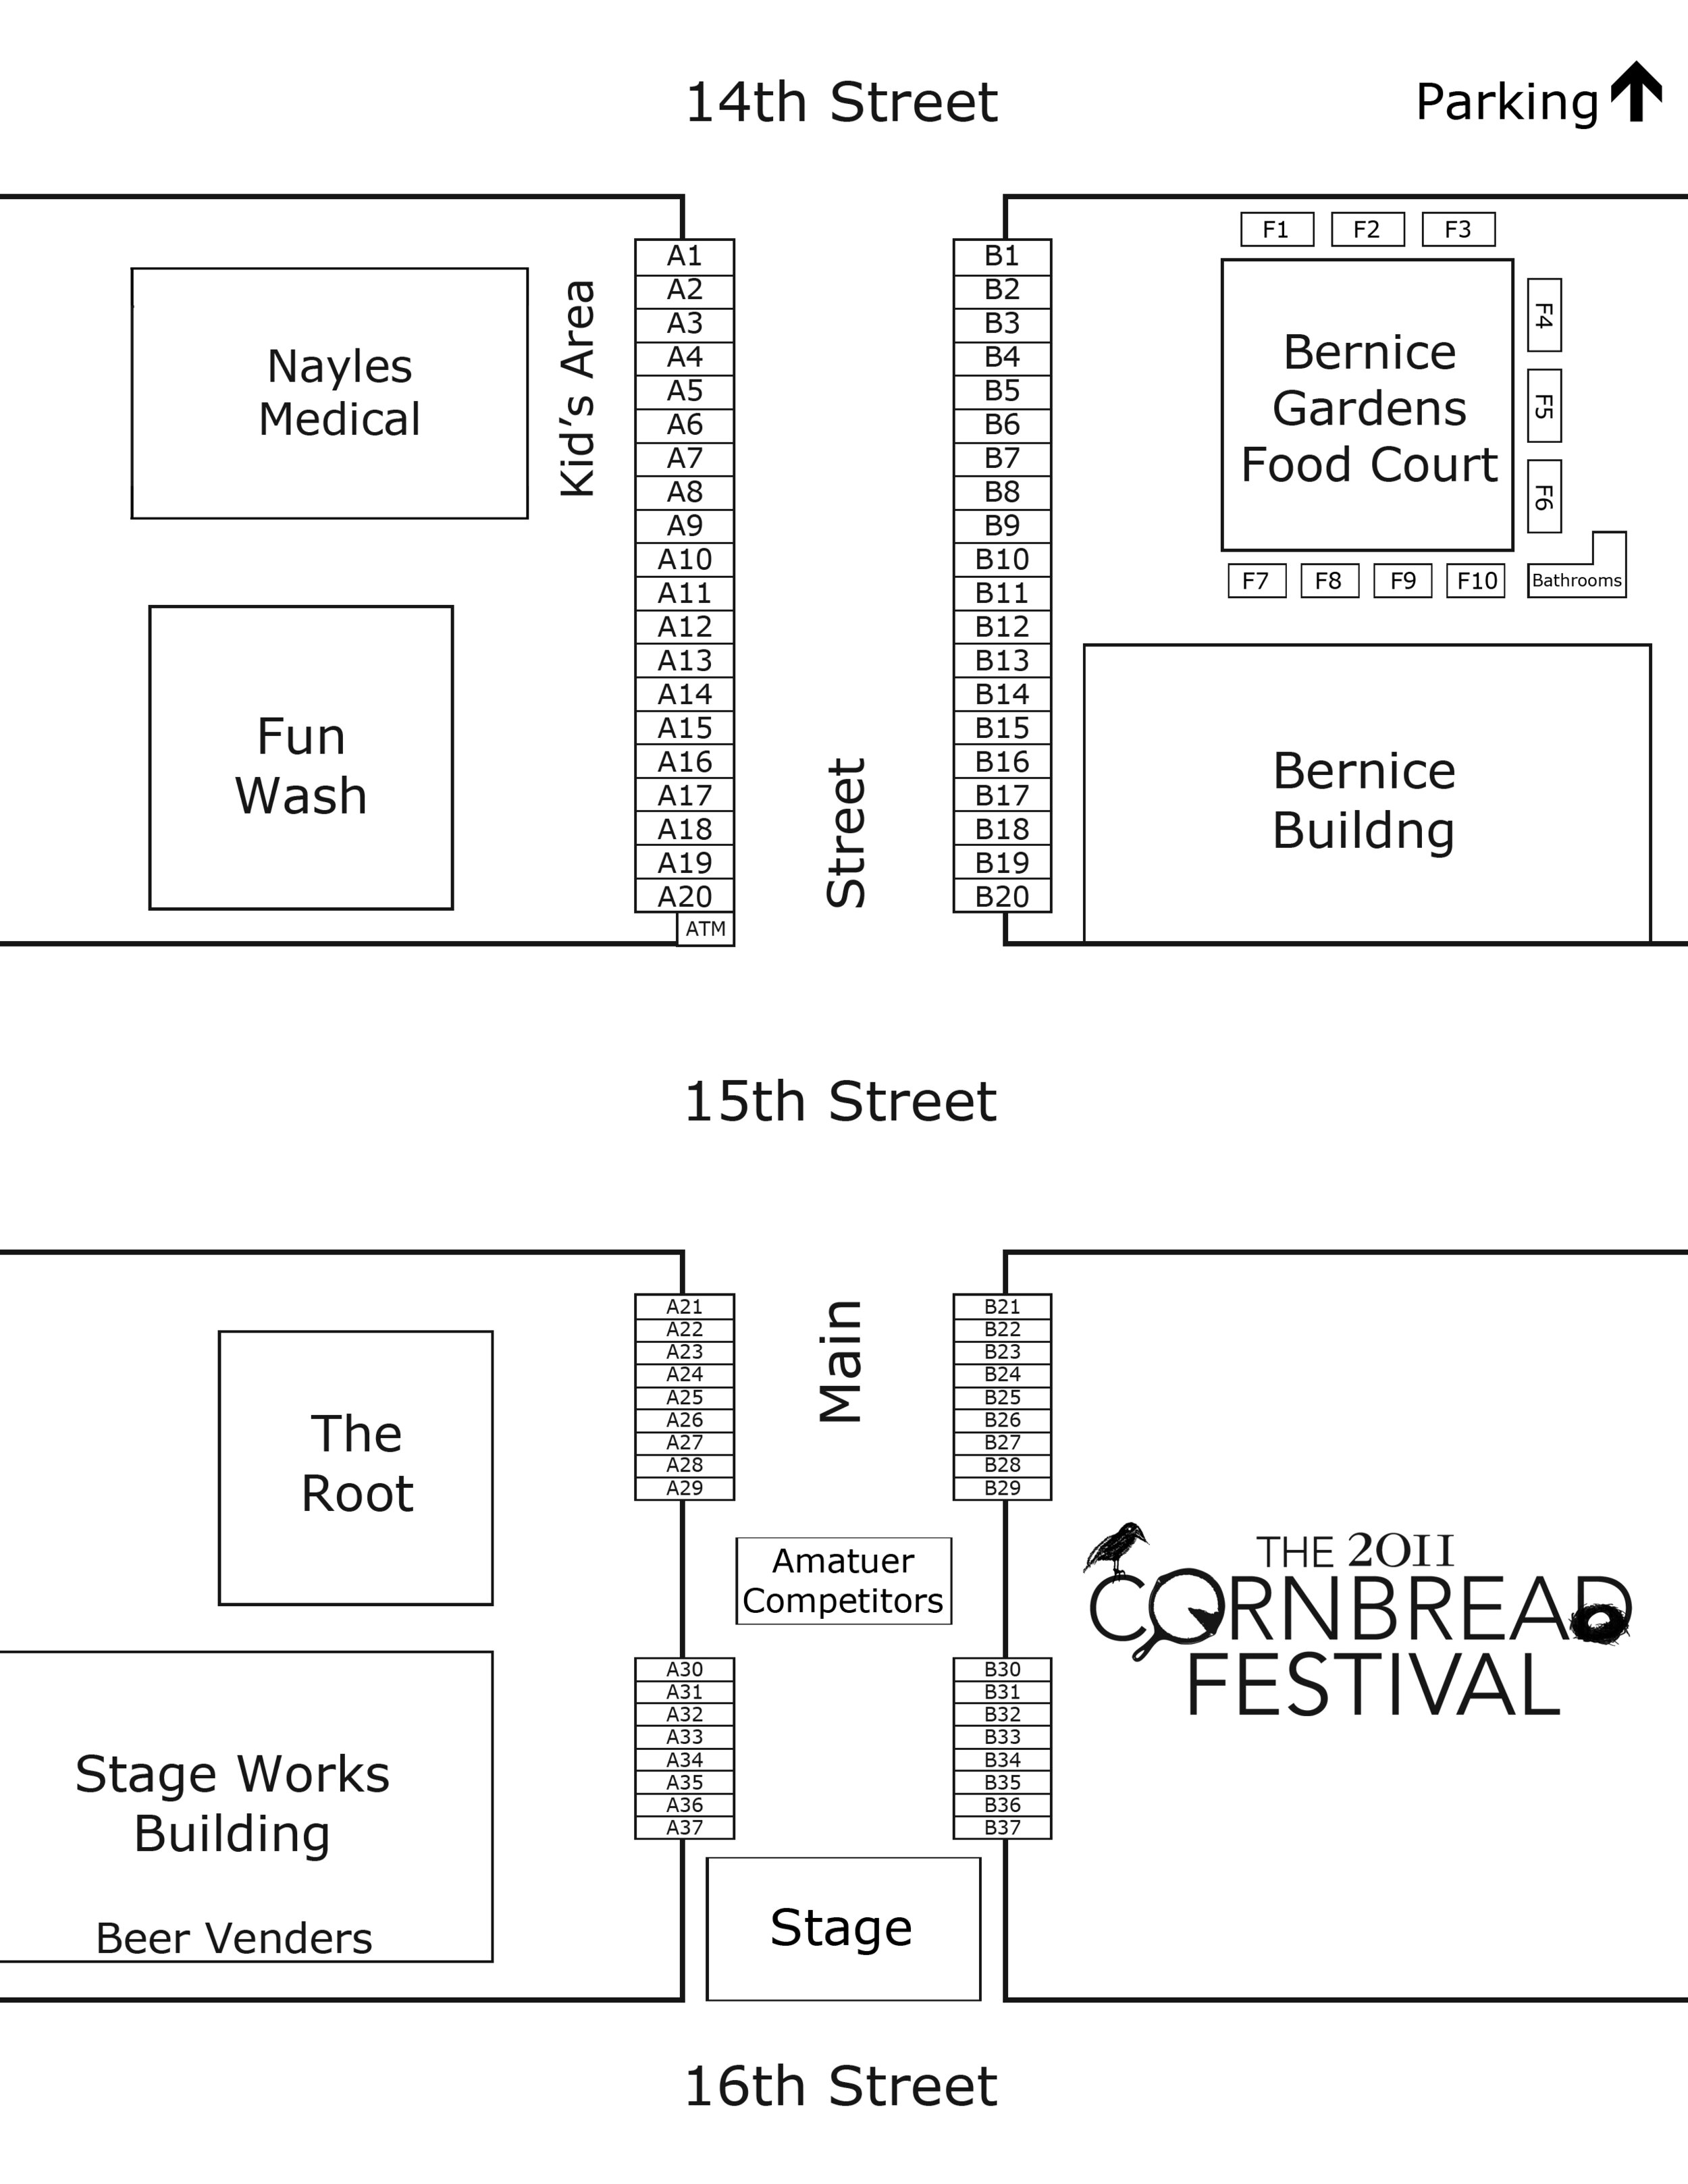 2011 Cornbread Festival Map